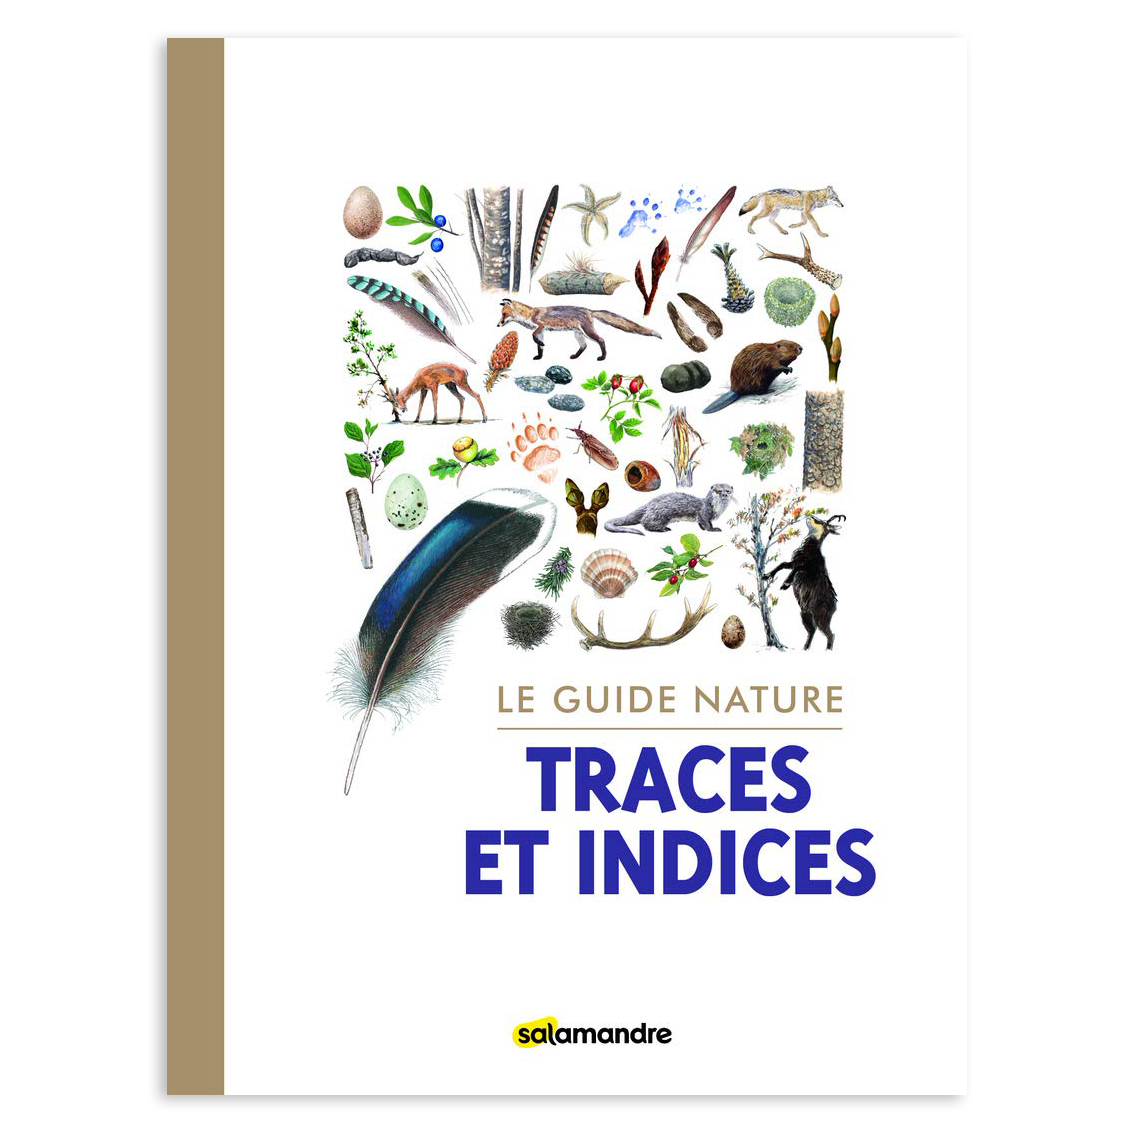 Le guide nature : Traces et indices